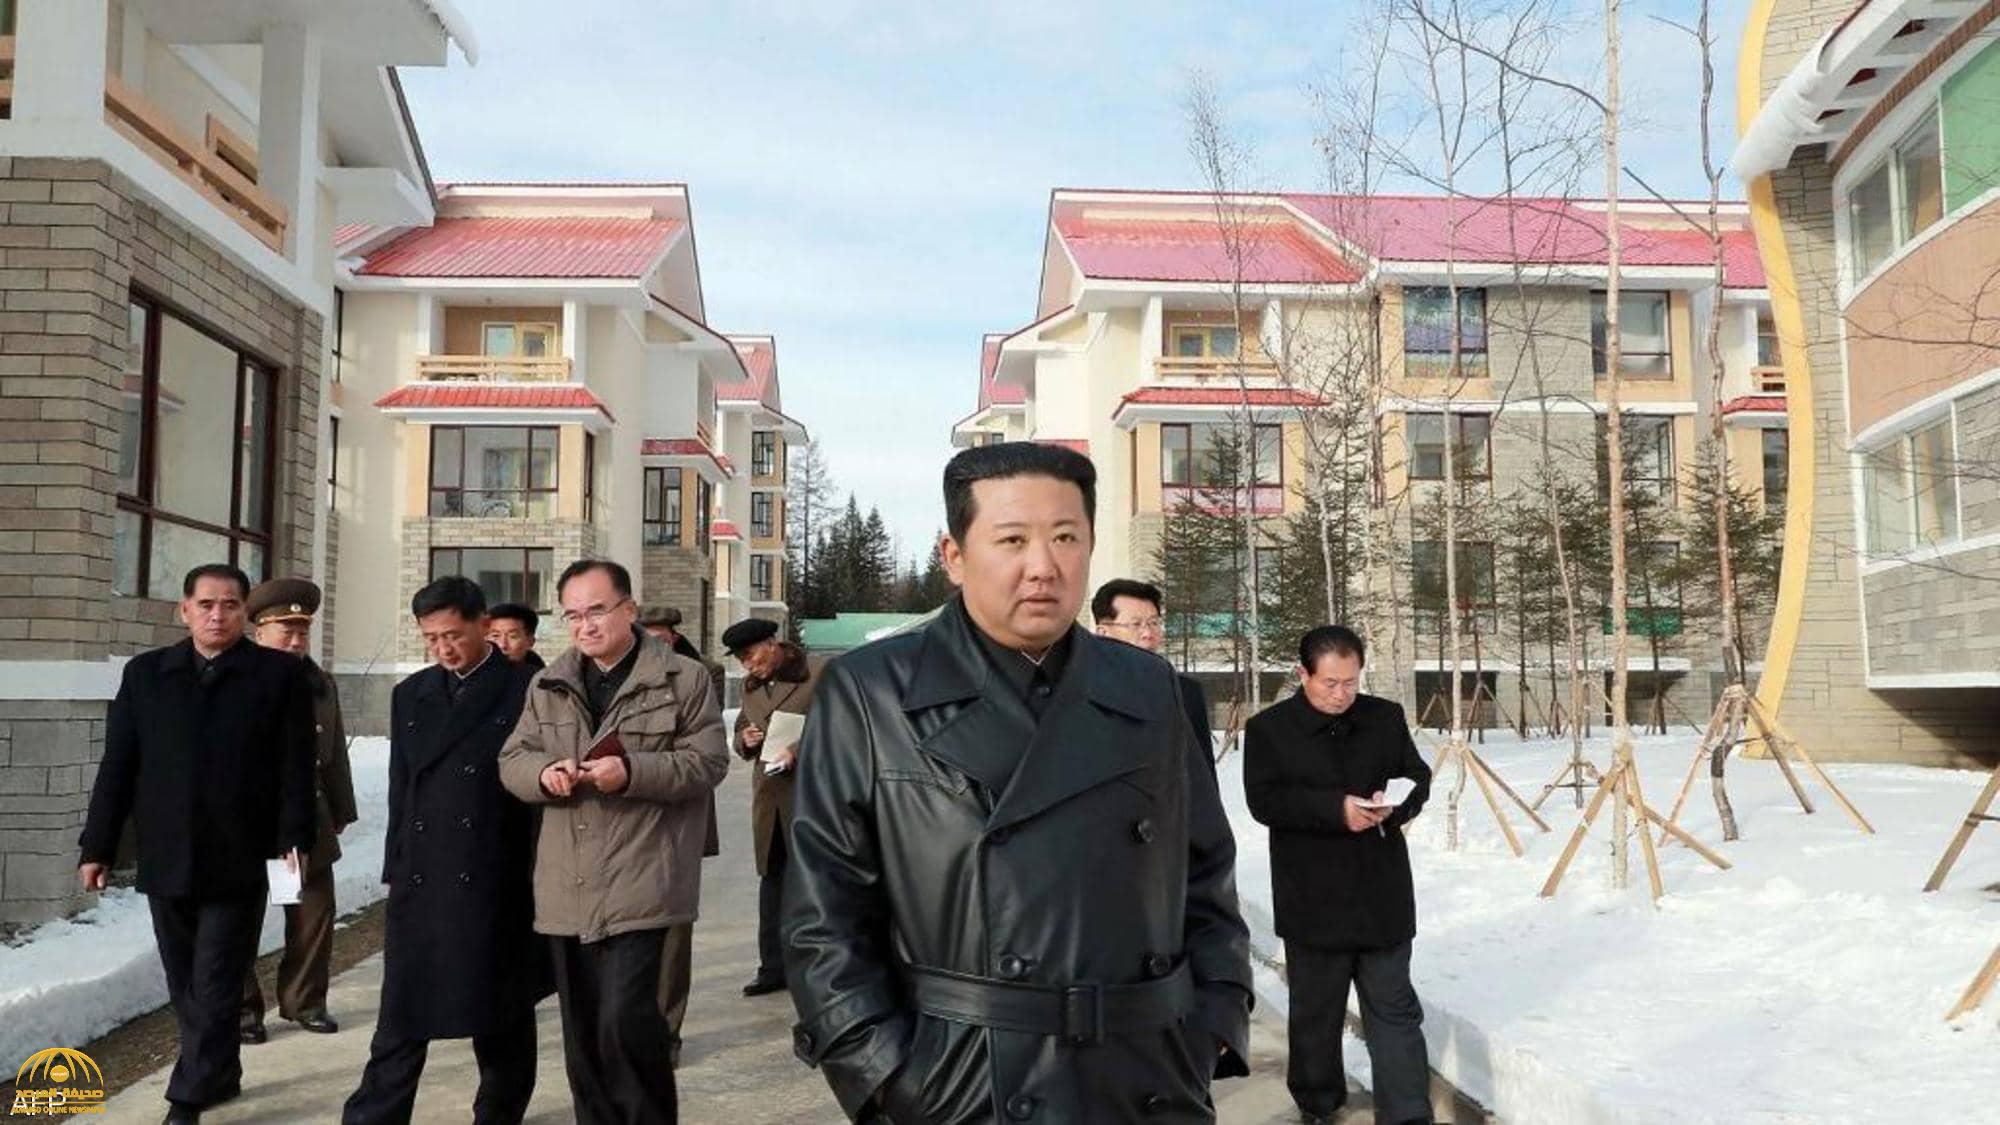 بعد غياب غامض.. صور حديثة لزعيم كوريا الشمالية تثير التساؤلات